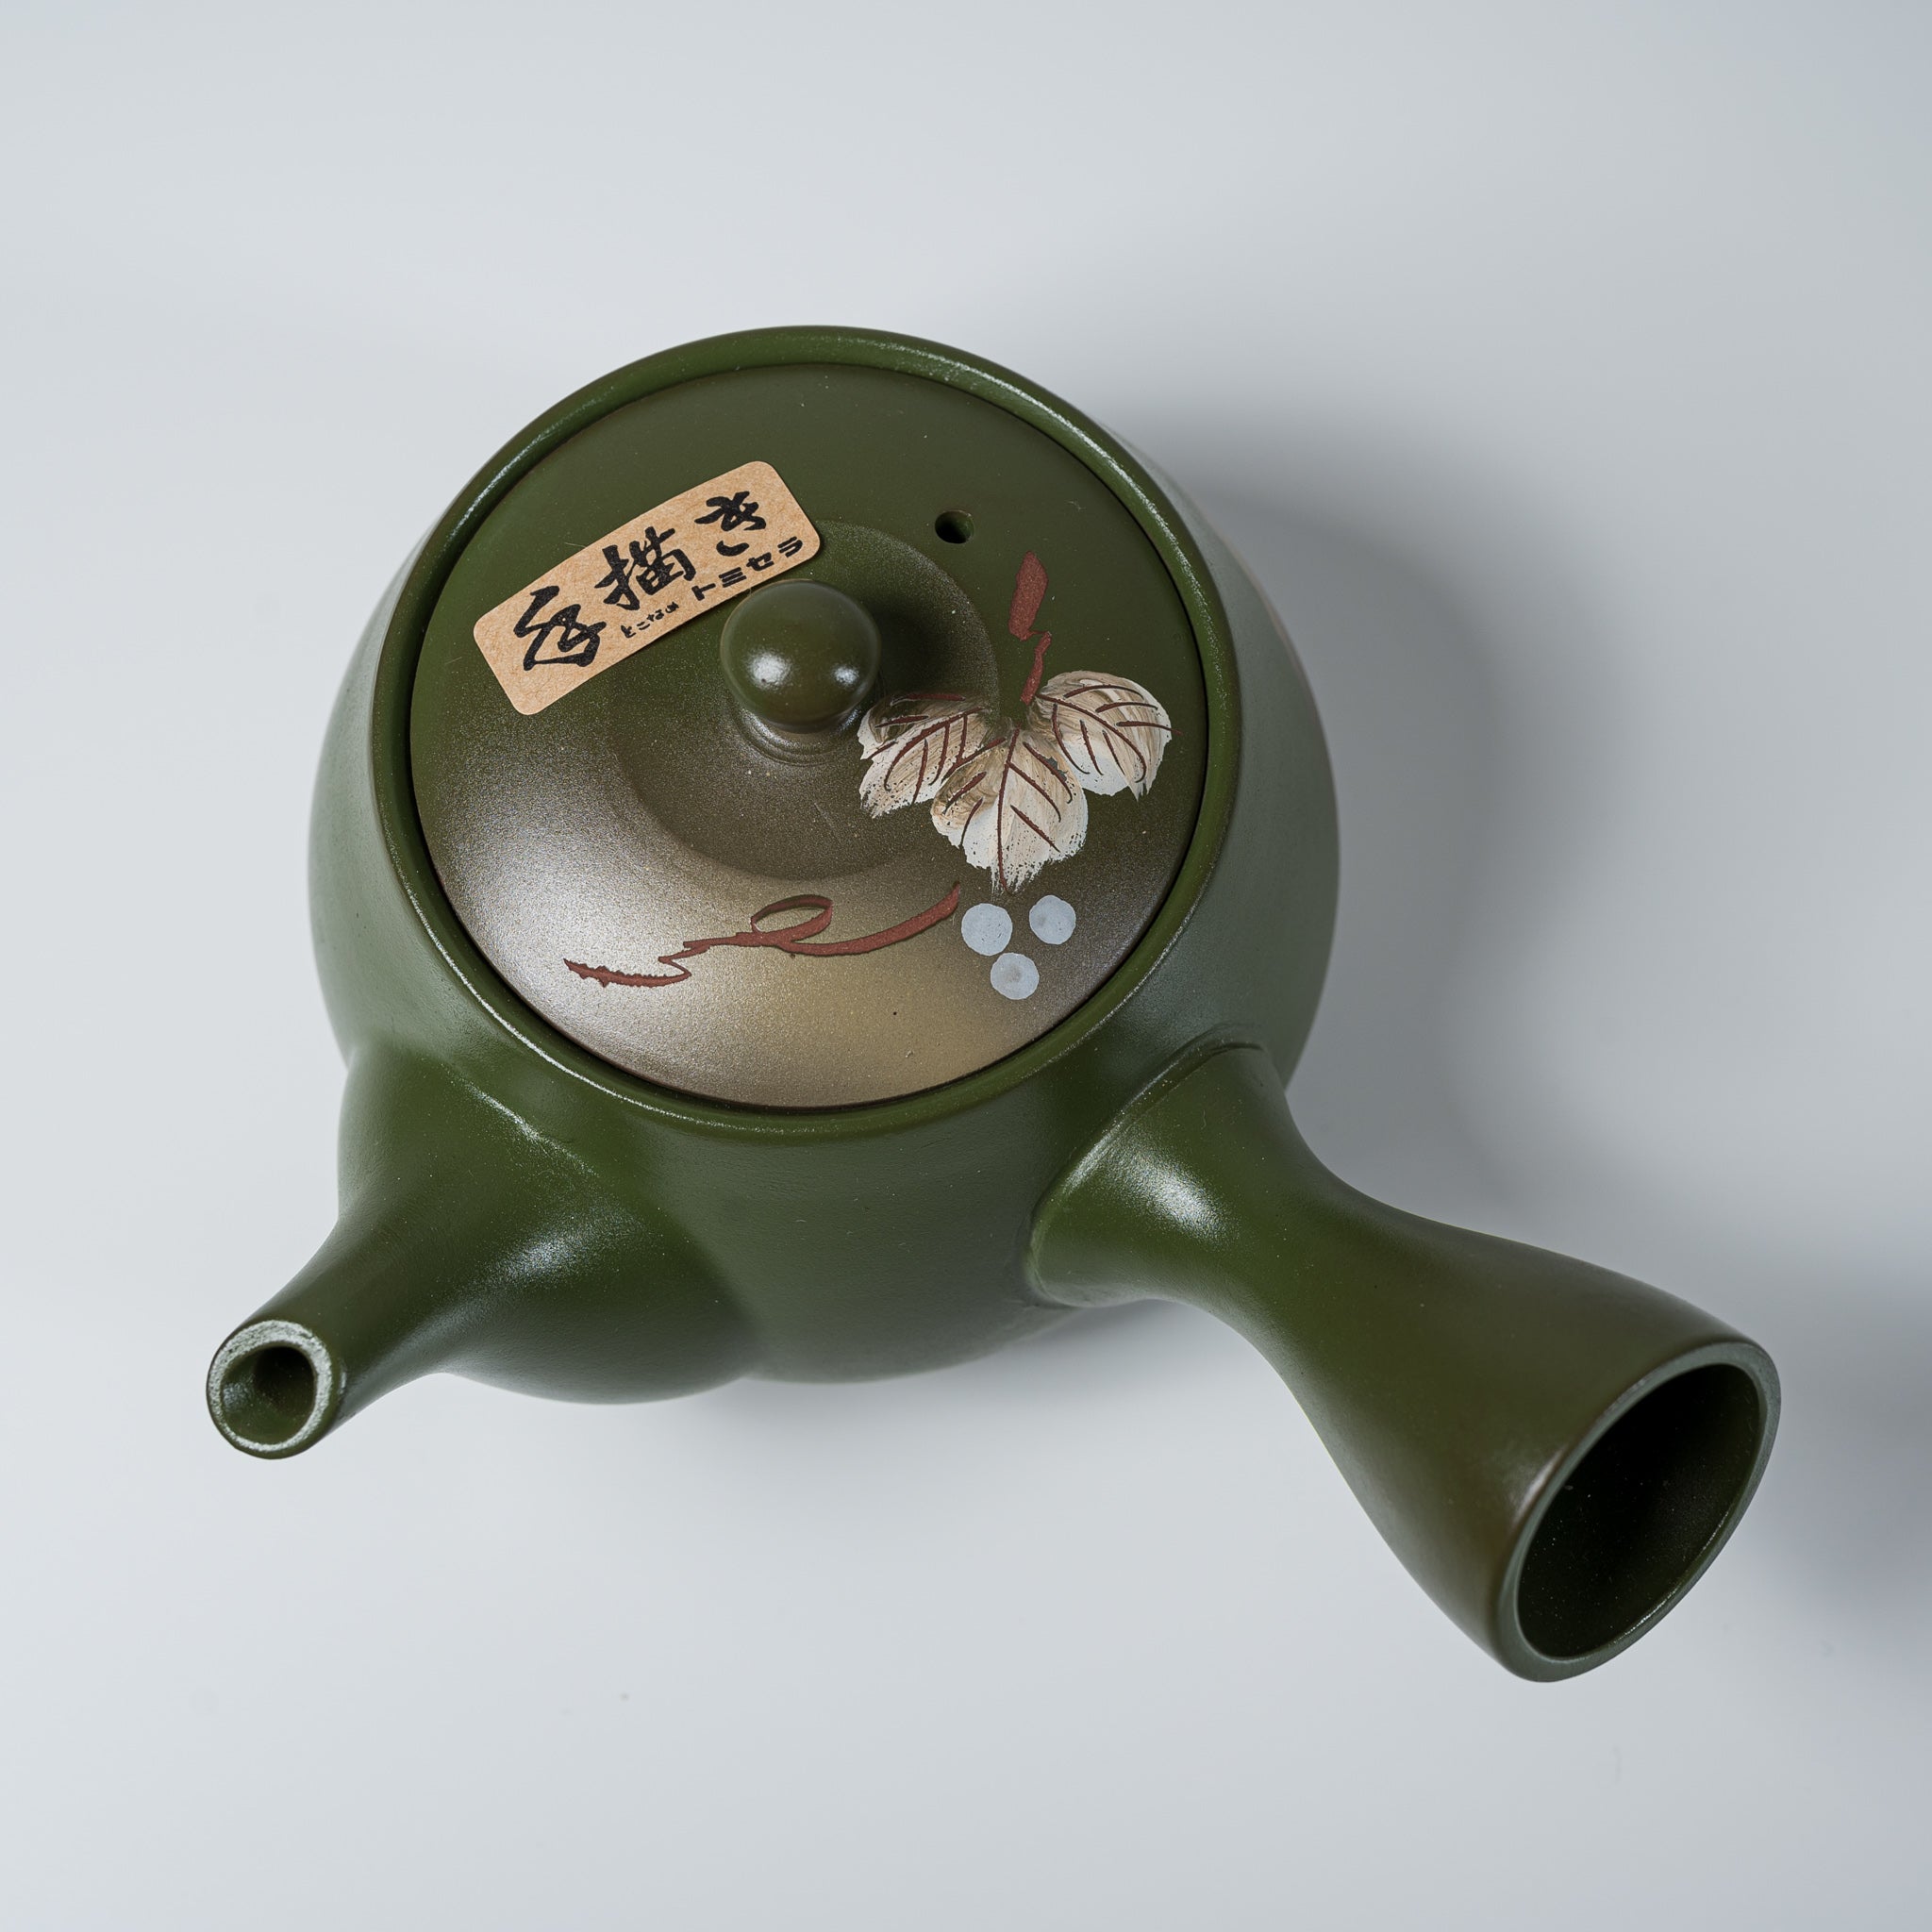 Hand-painted Tokoname Teapot - 380 ml - Green / 常滑急須